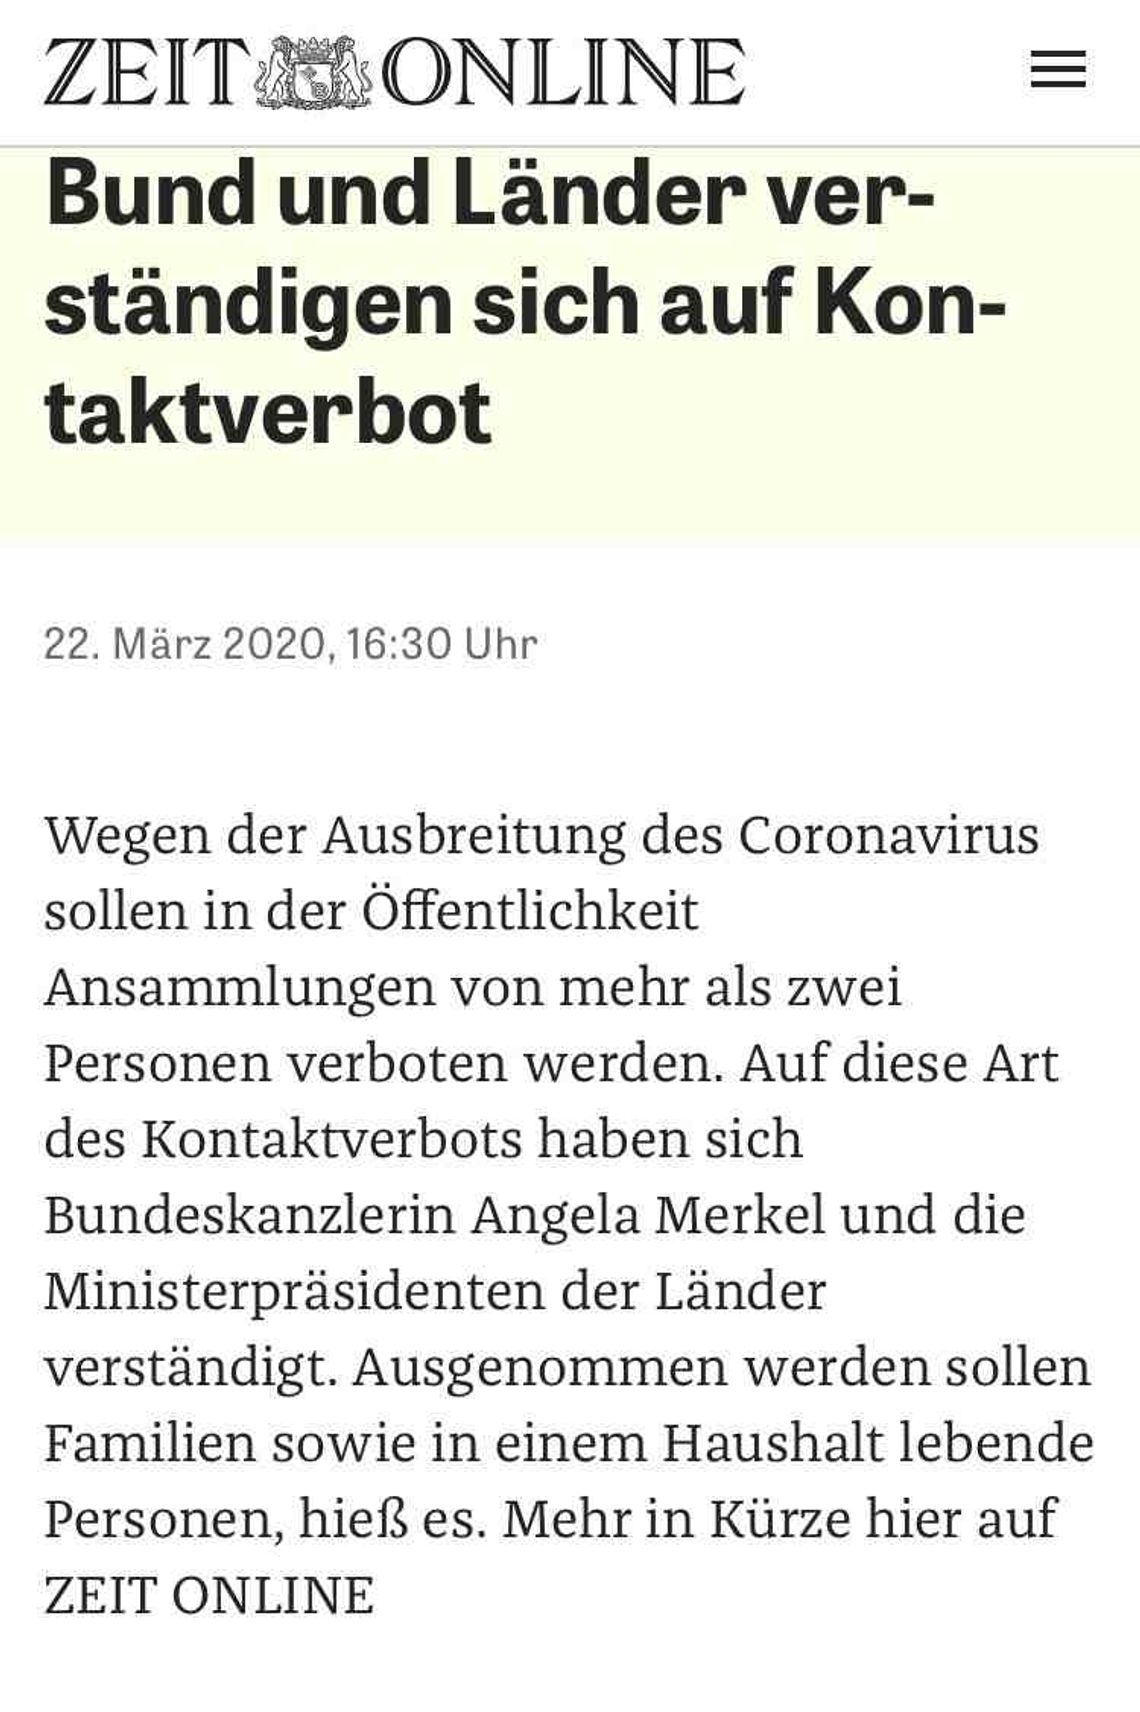 W Niemczech, w związku z epidemią koronawirusa, wprowadzono zakaz zgromadzeń powyżej 2 osób